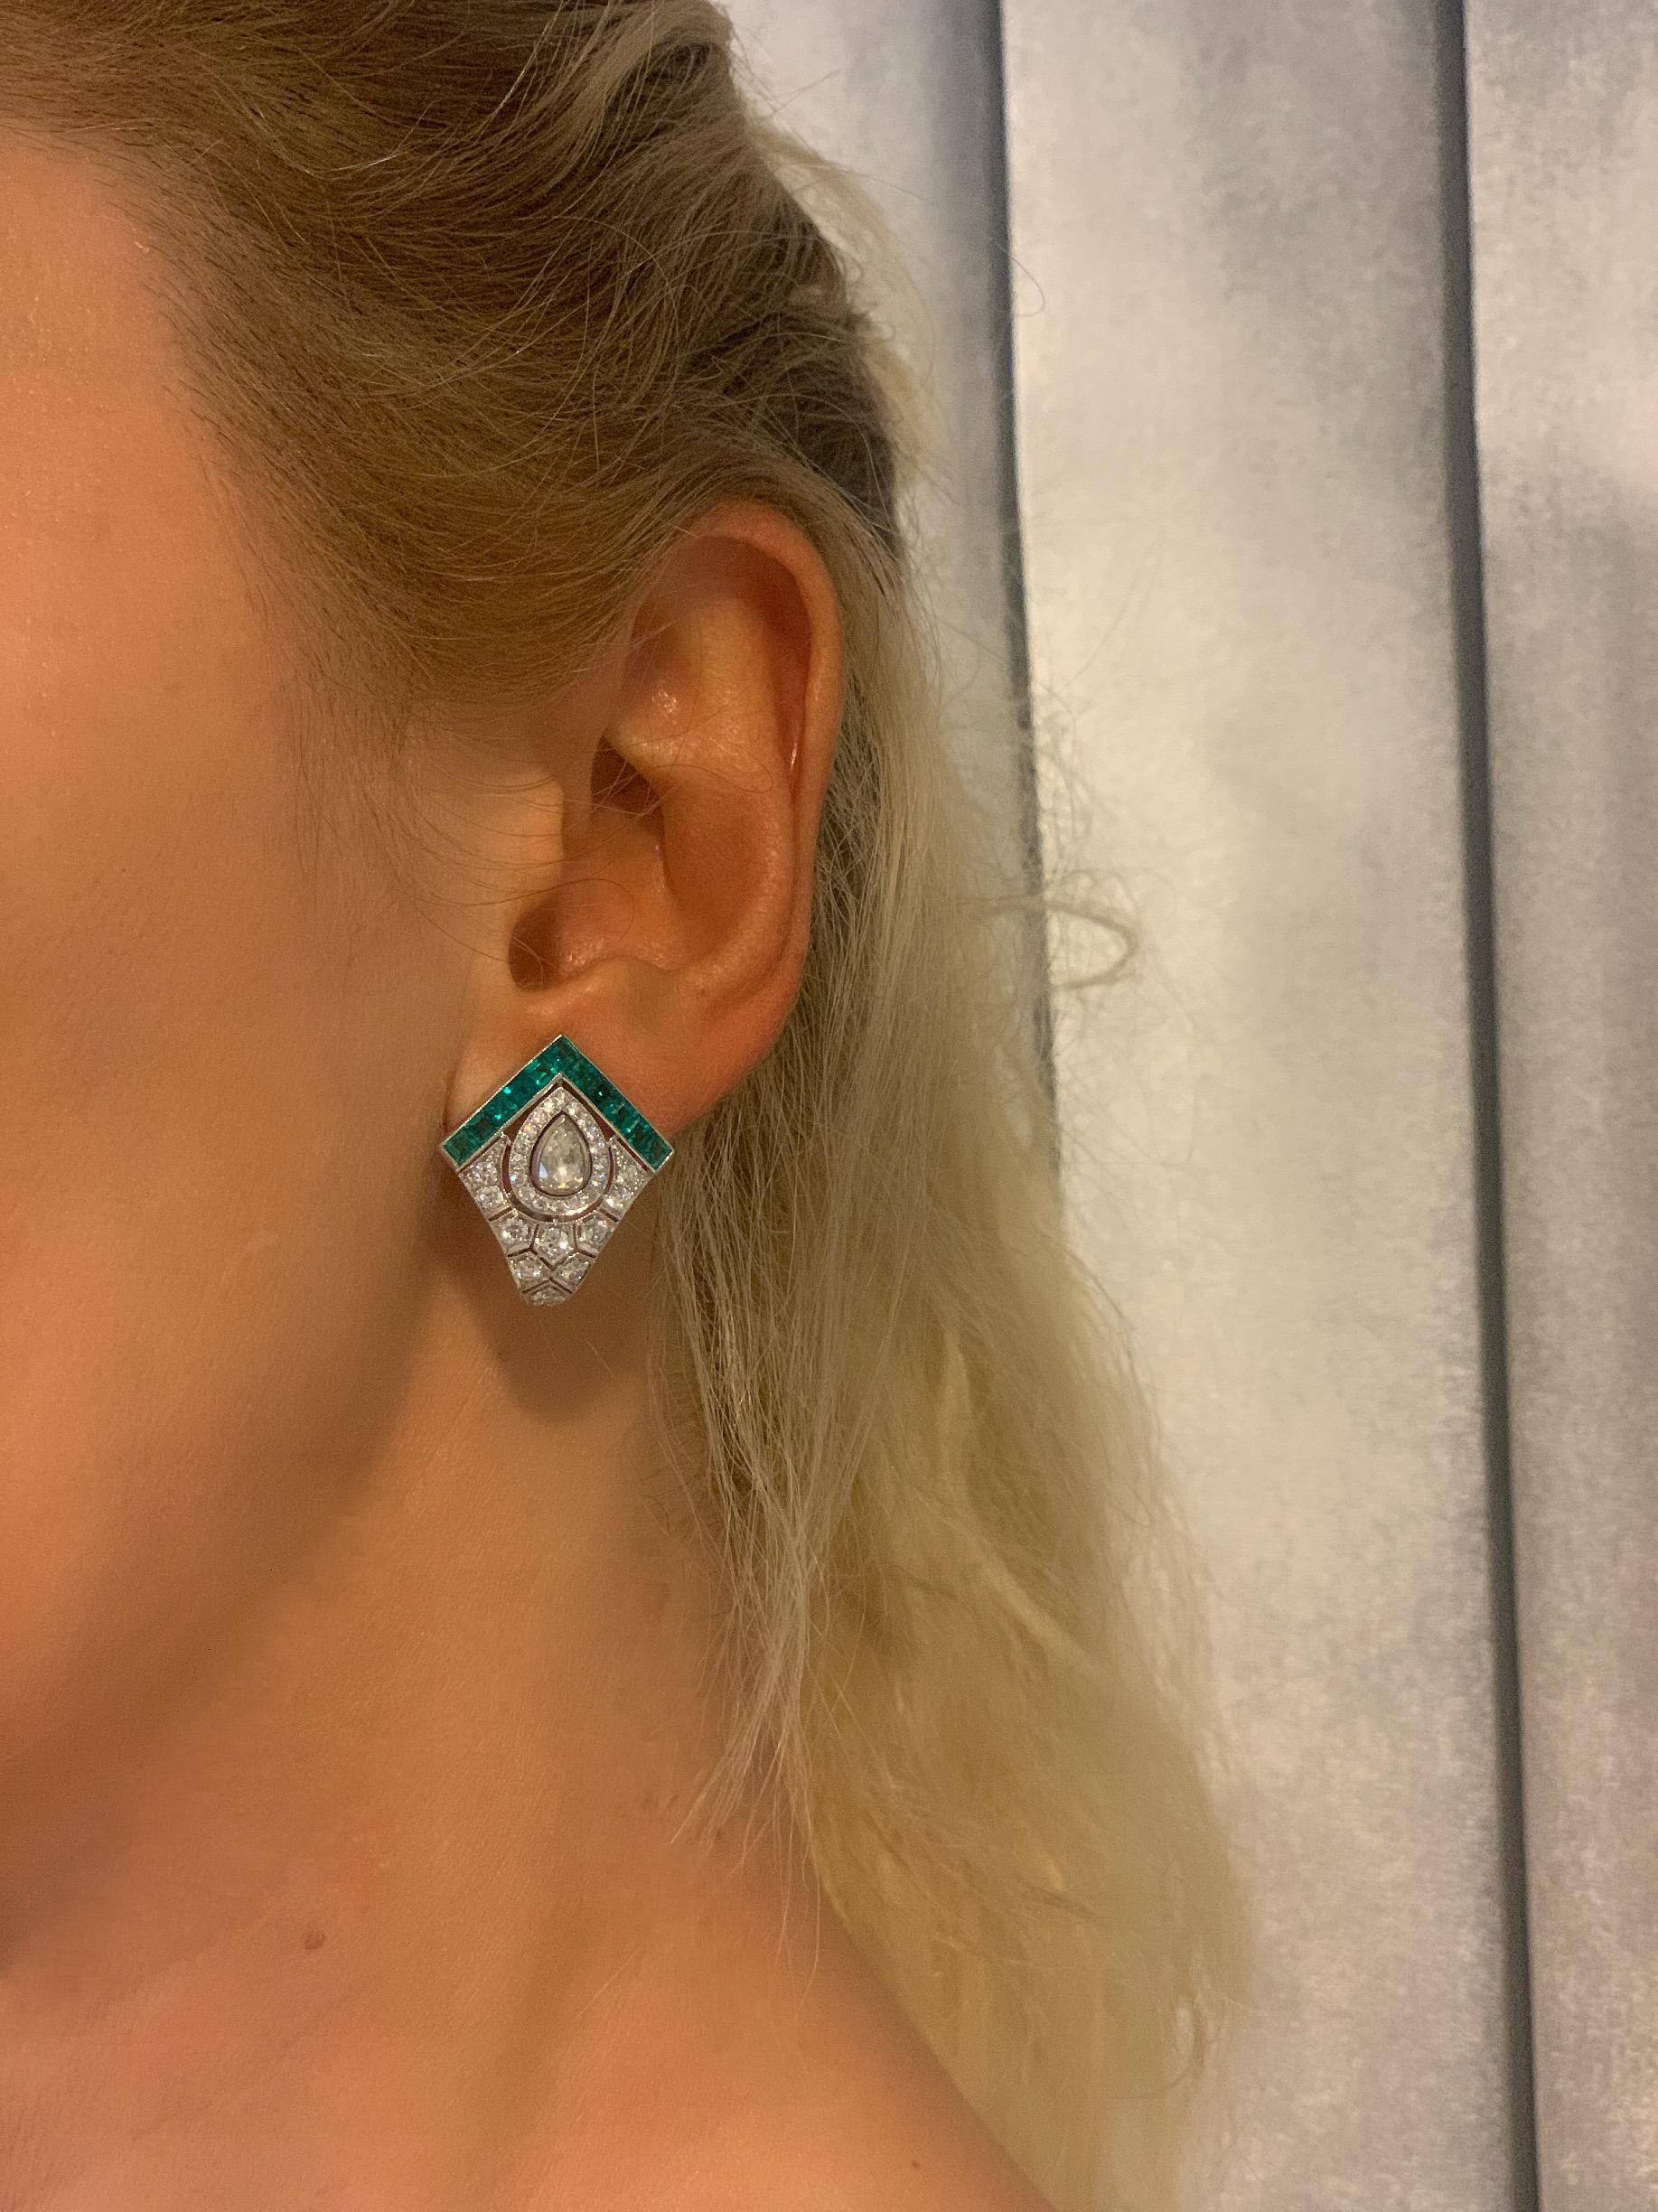 Monan 1,68 Carat Diamonds with 0,53 Carat Pear Shape Rose Cut Diamonds and 1,15 Carat and 1,22 Carat Emerald Art Deco Style Earrings